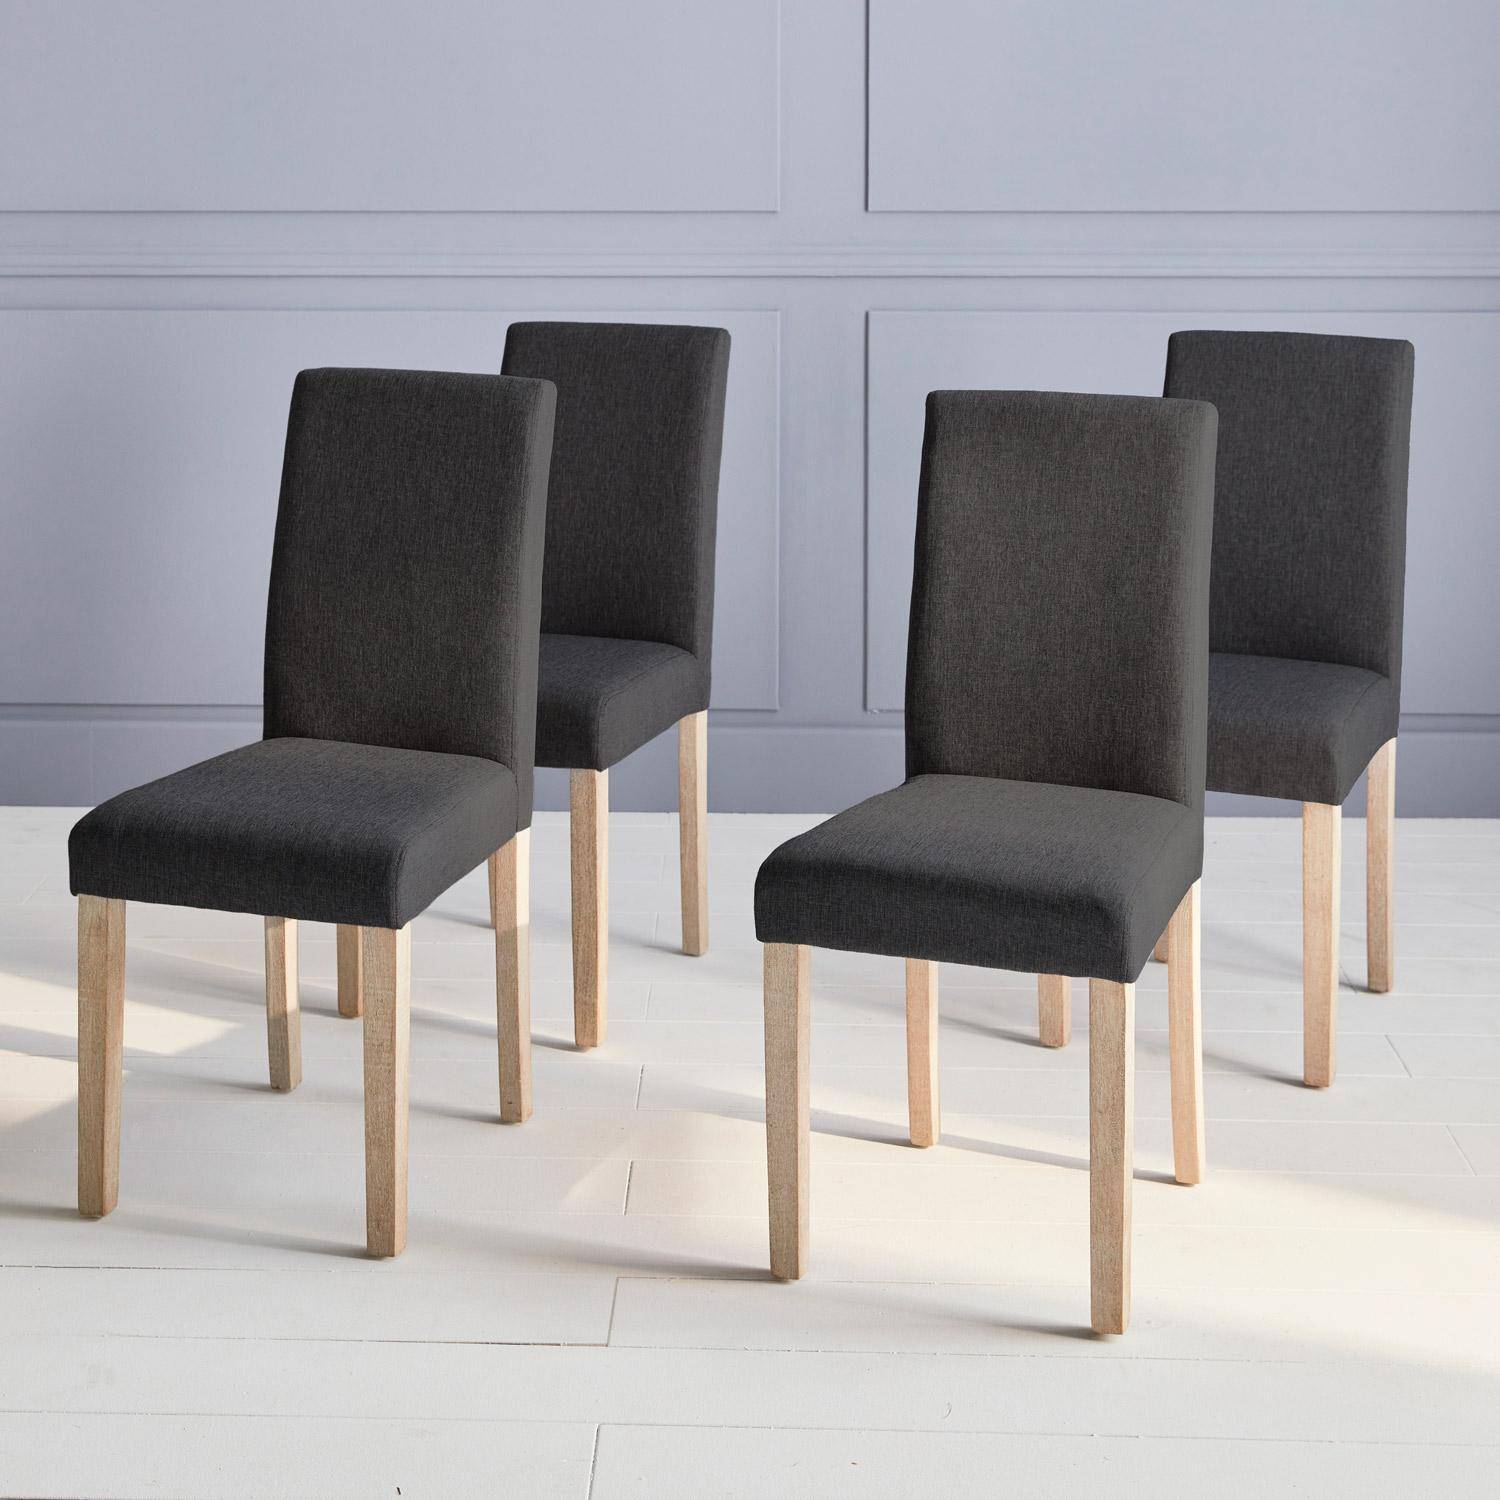 Conjunto de 4 sillas - Rita - sillas de tela, patas madera lacada ,sweeek,Photo1